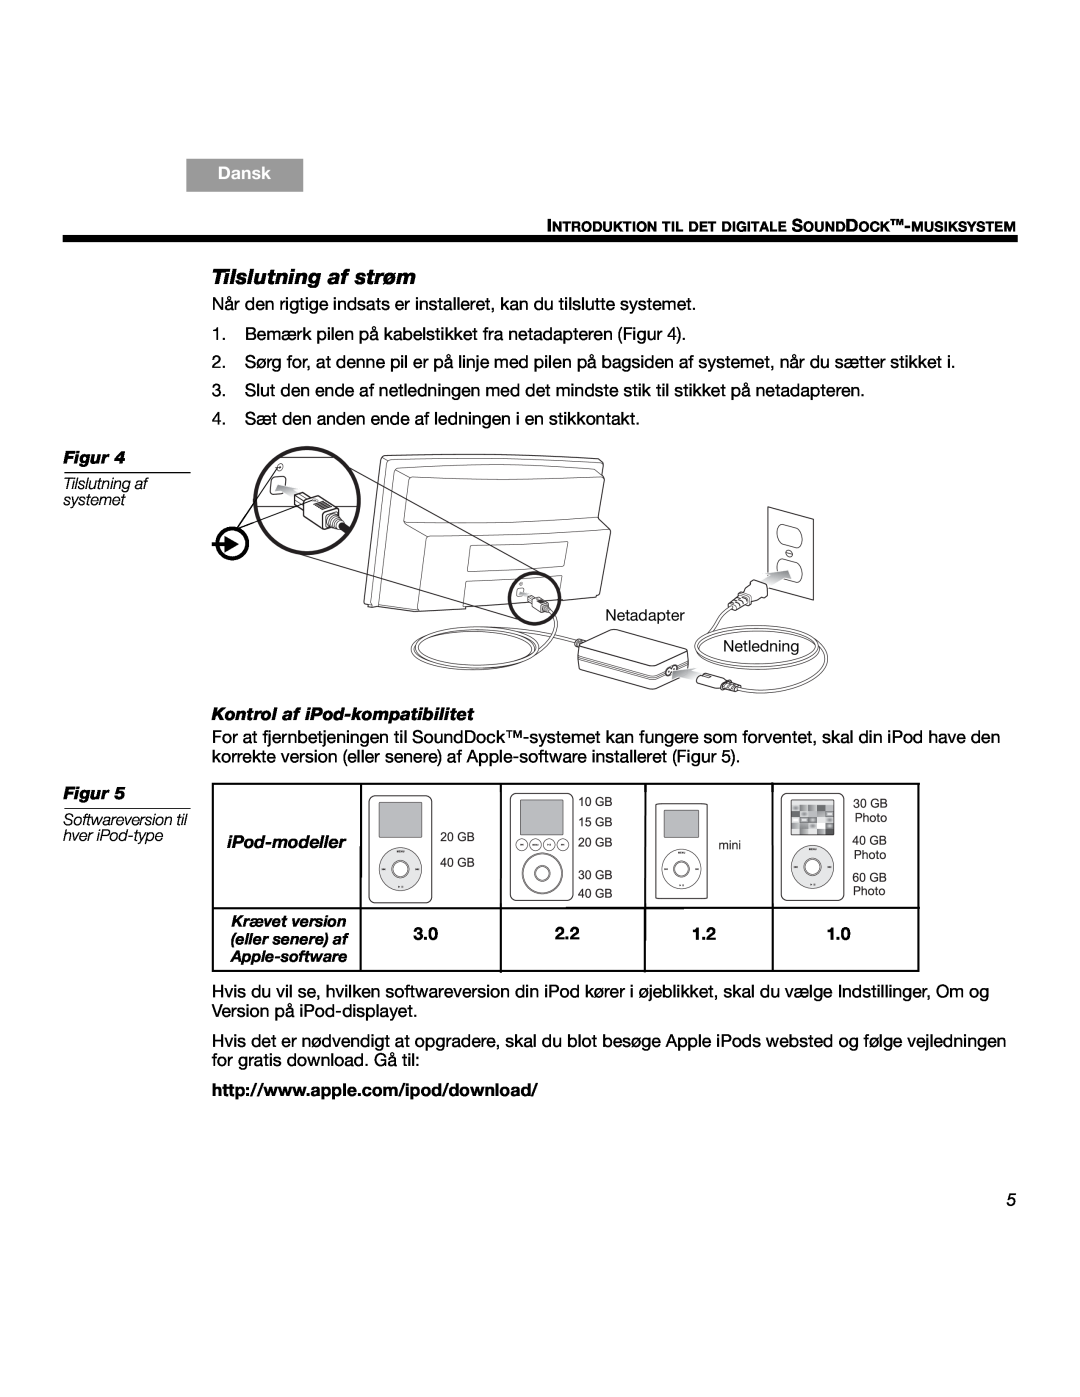 Bose SOUNDDOCKTM manual Tilslutning af strøm, Kontrol af iPod-kompatibilitet, iPod-modeller, Dansk, Figur 